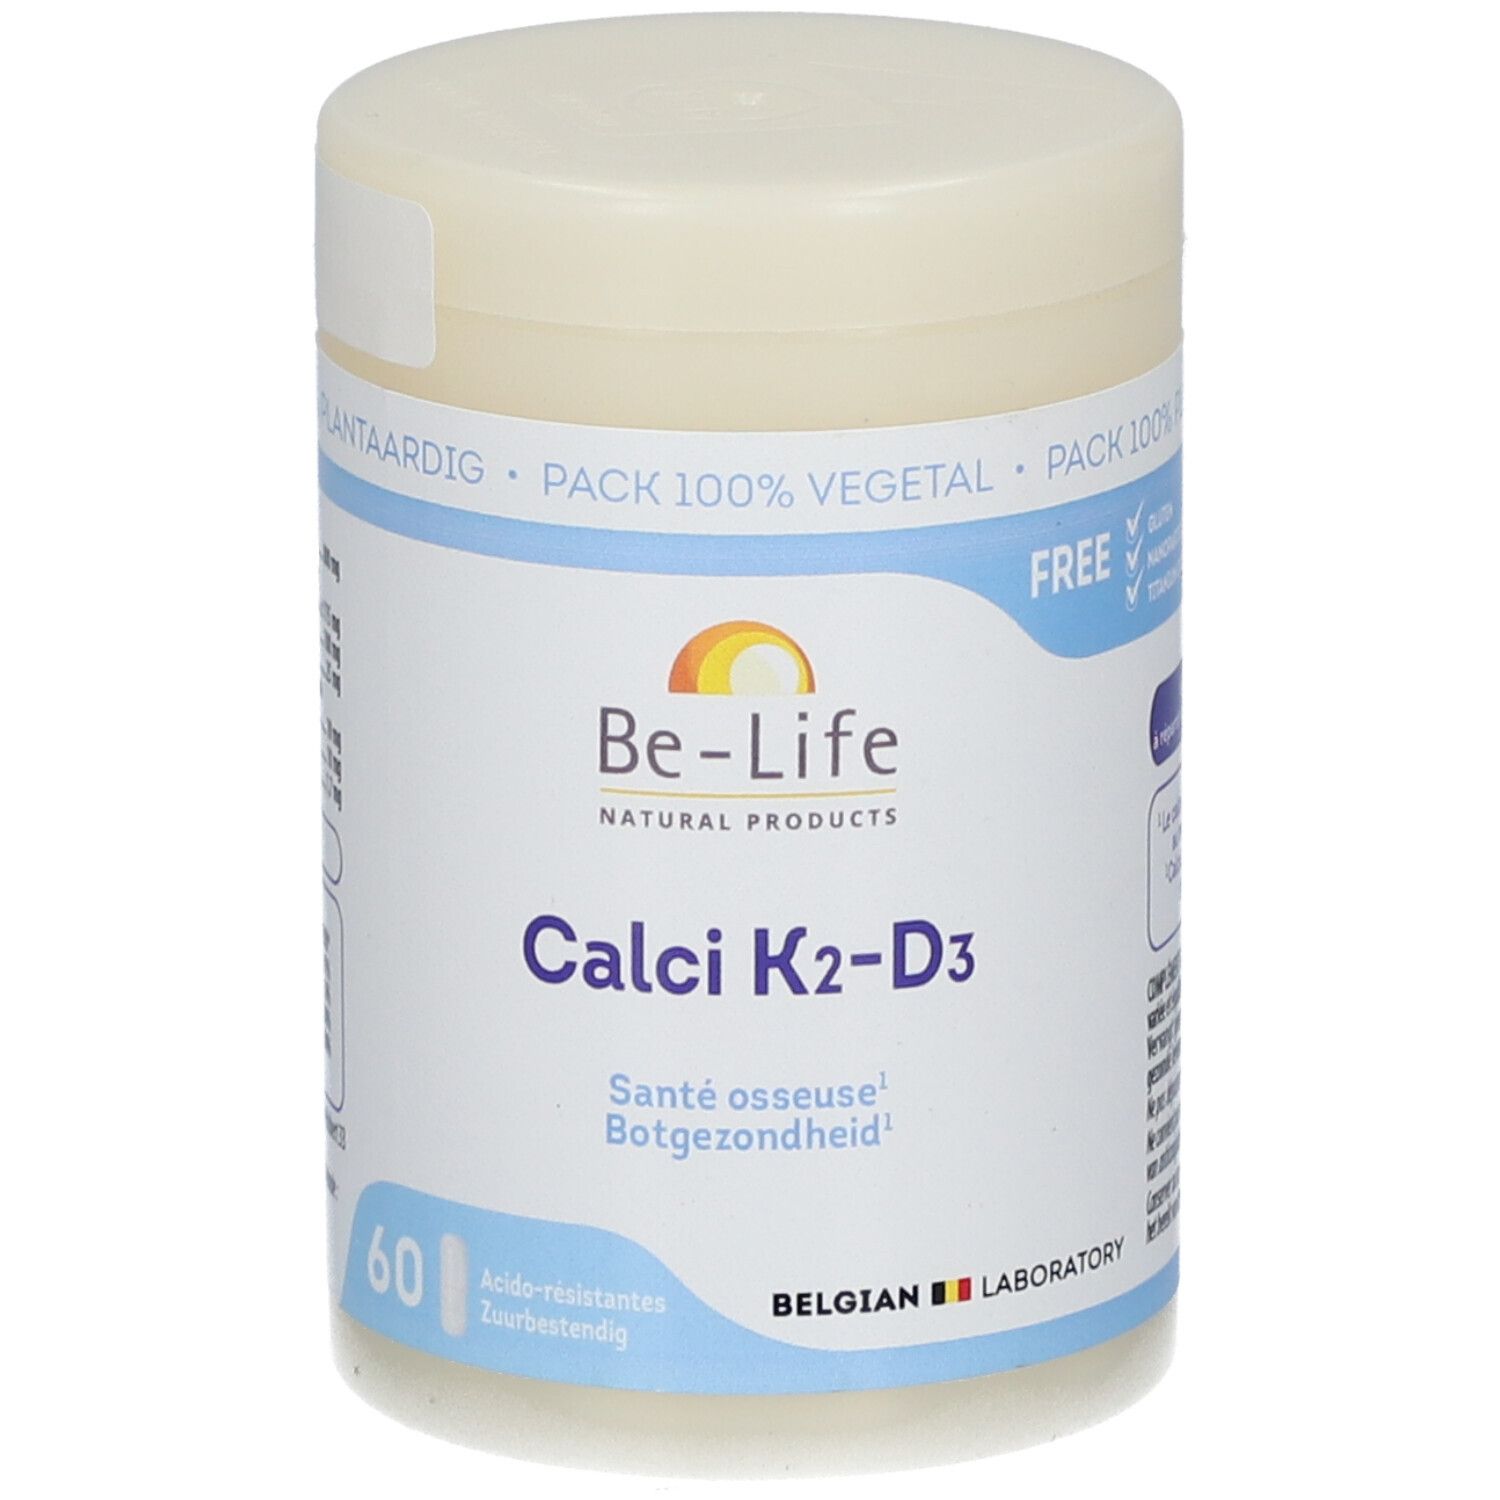 Be-Life Calci K2-D3